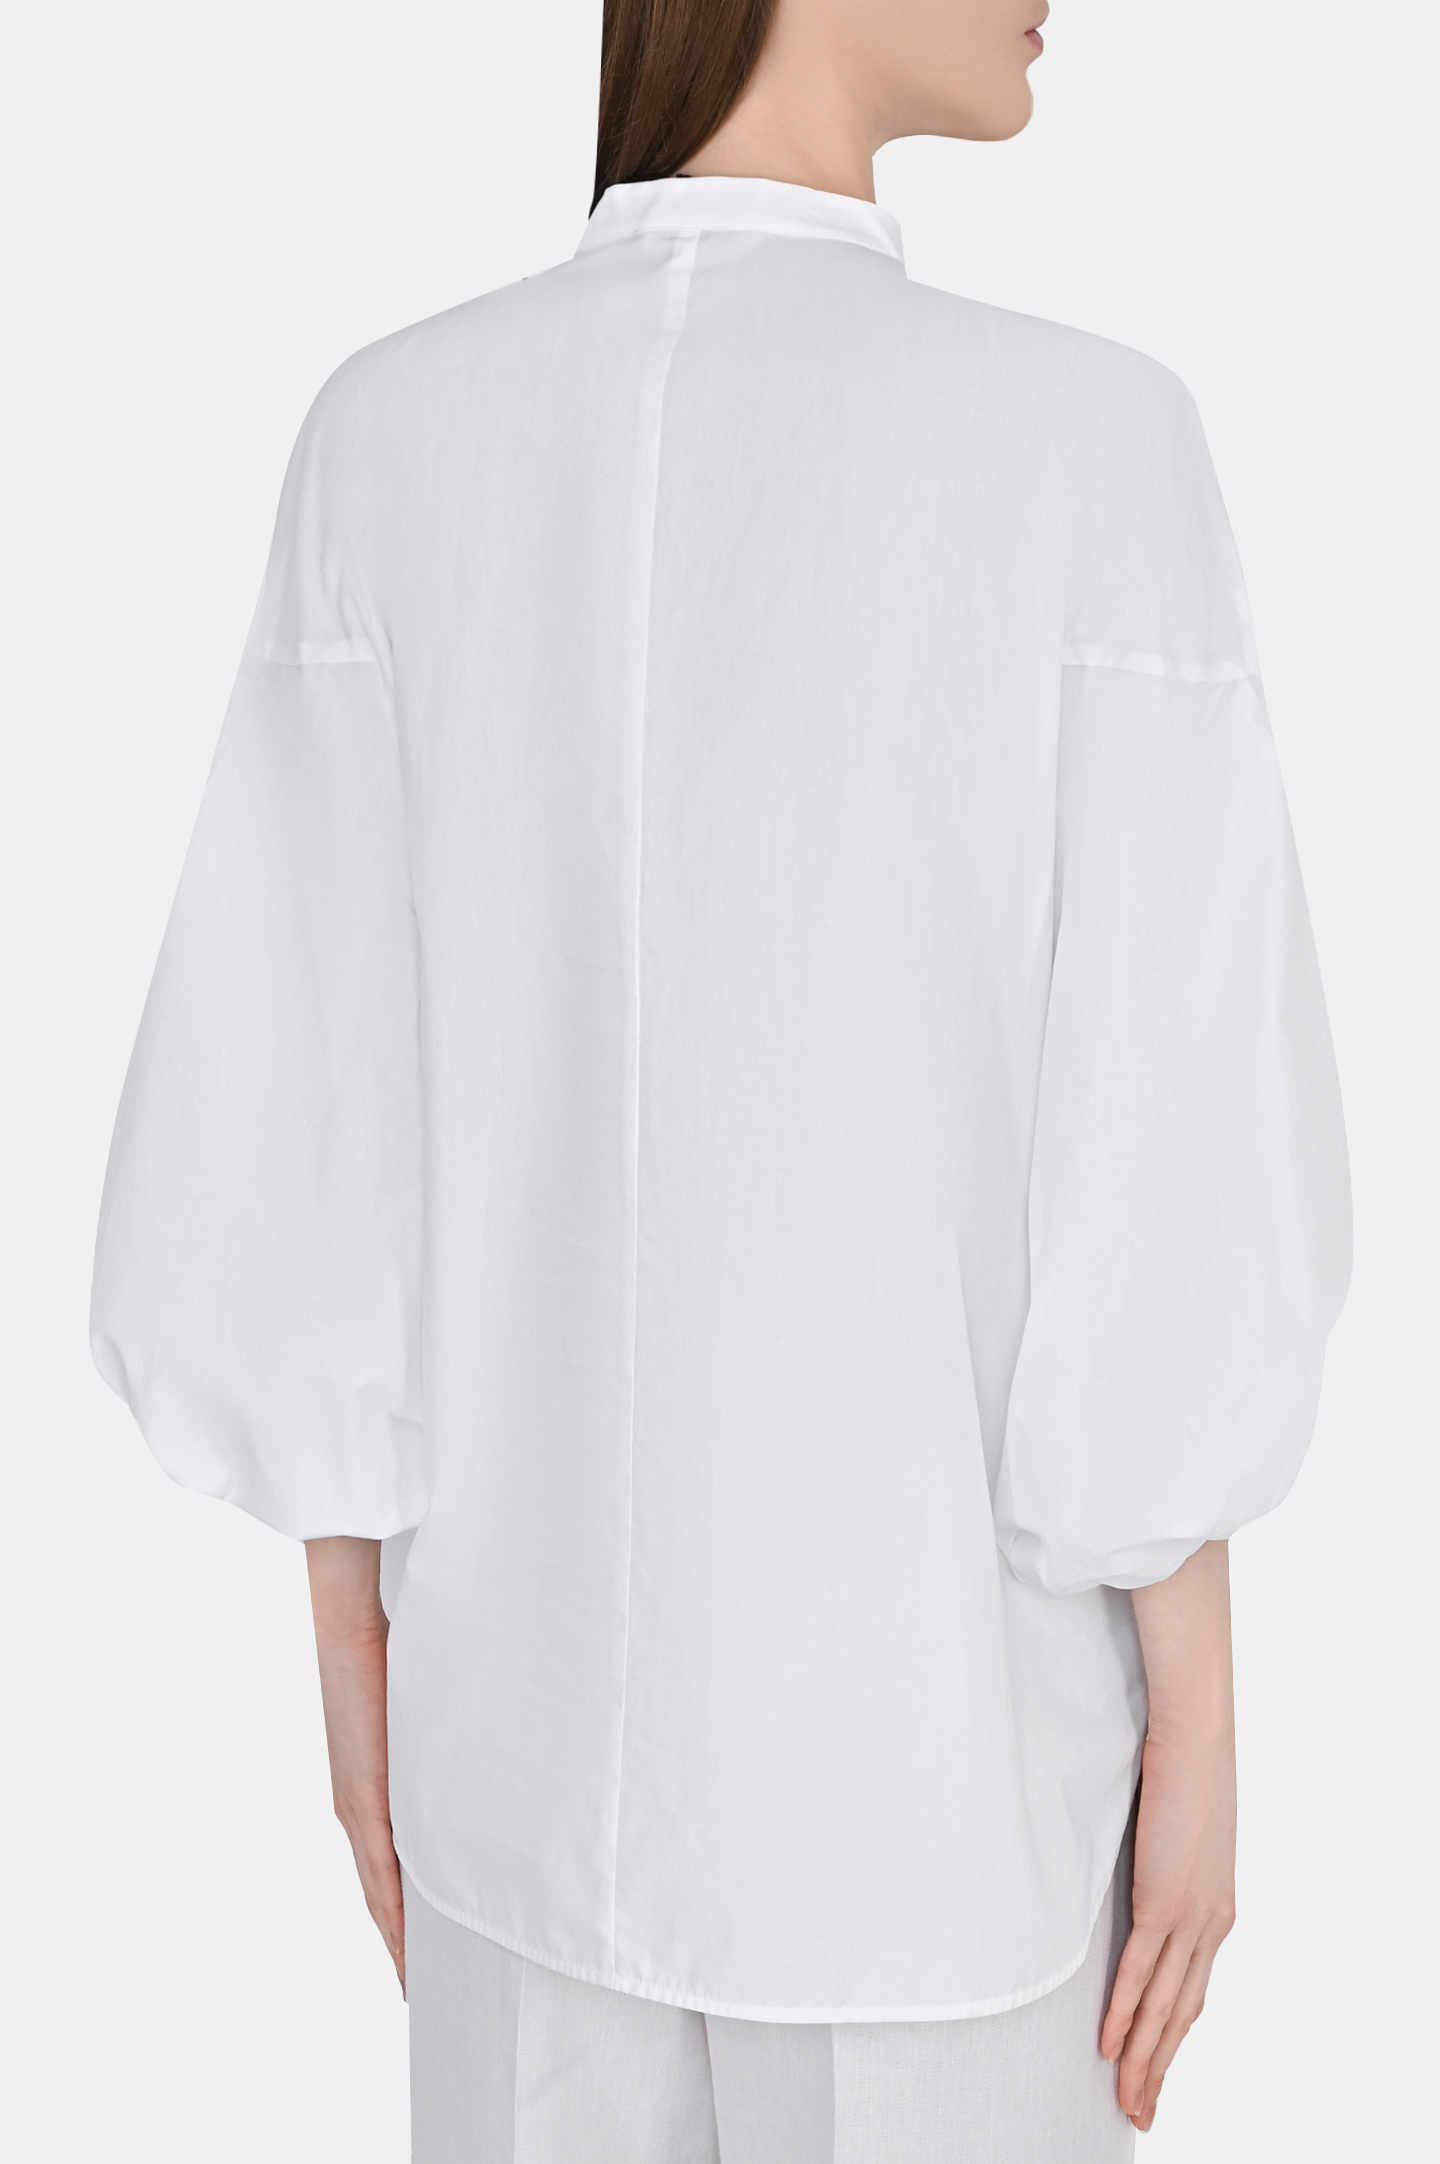 Блуза FABIANA FILIPPI CAD273B644I806, цвет: Белый, Женский